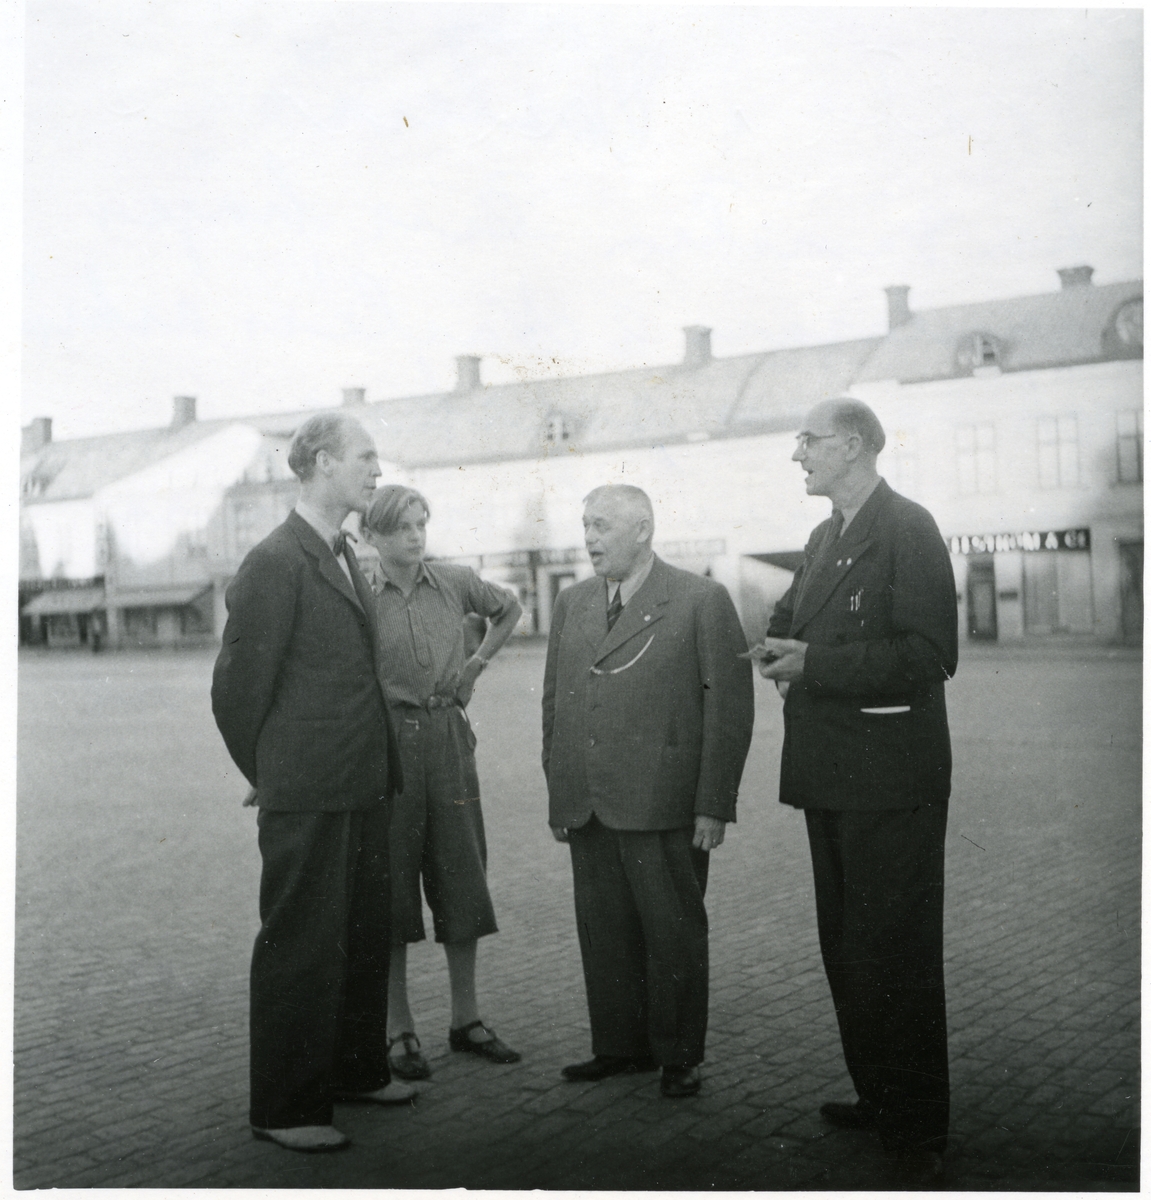 Västerås, Stora torget.
Tre män och en pojke stående på torget.